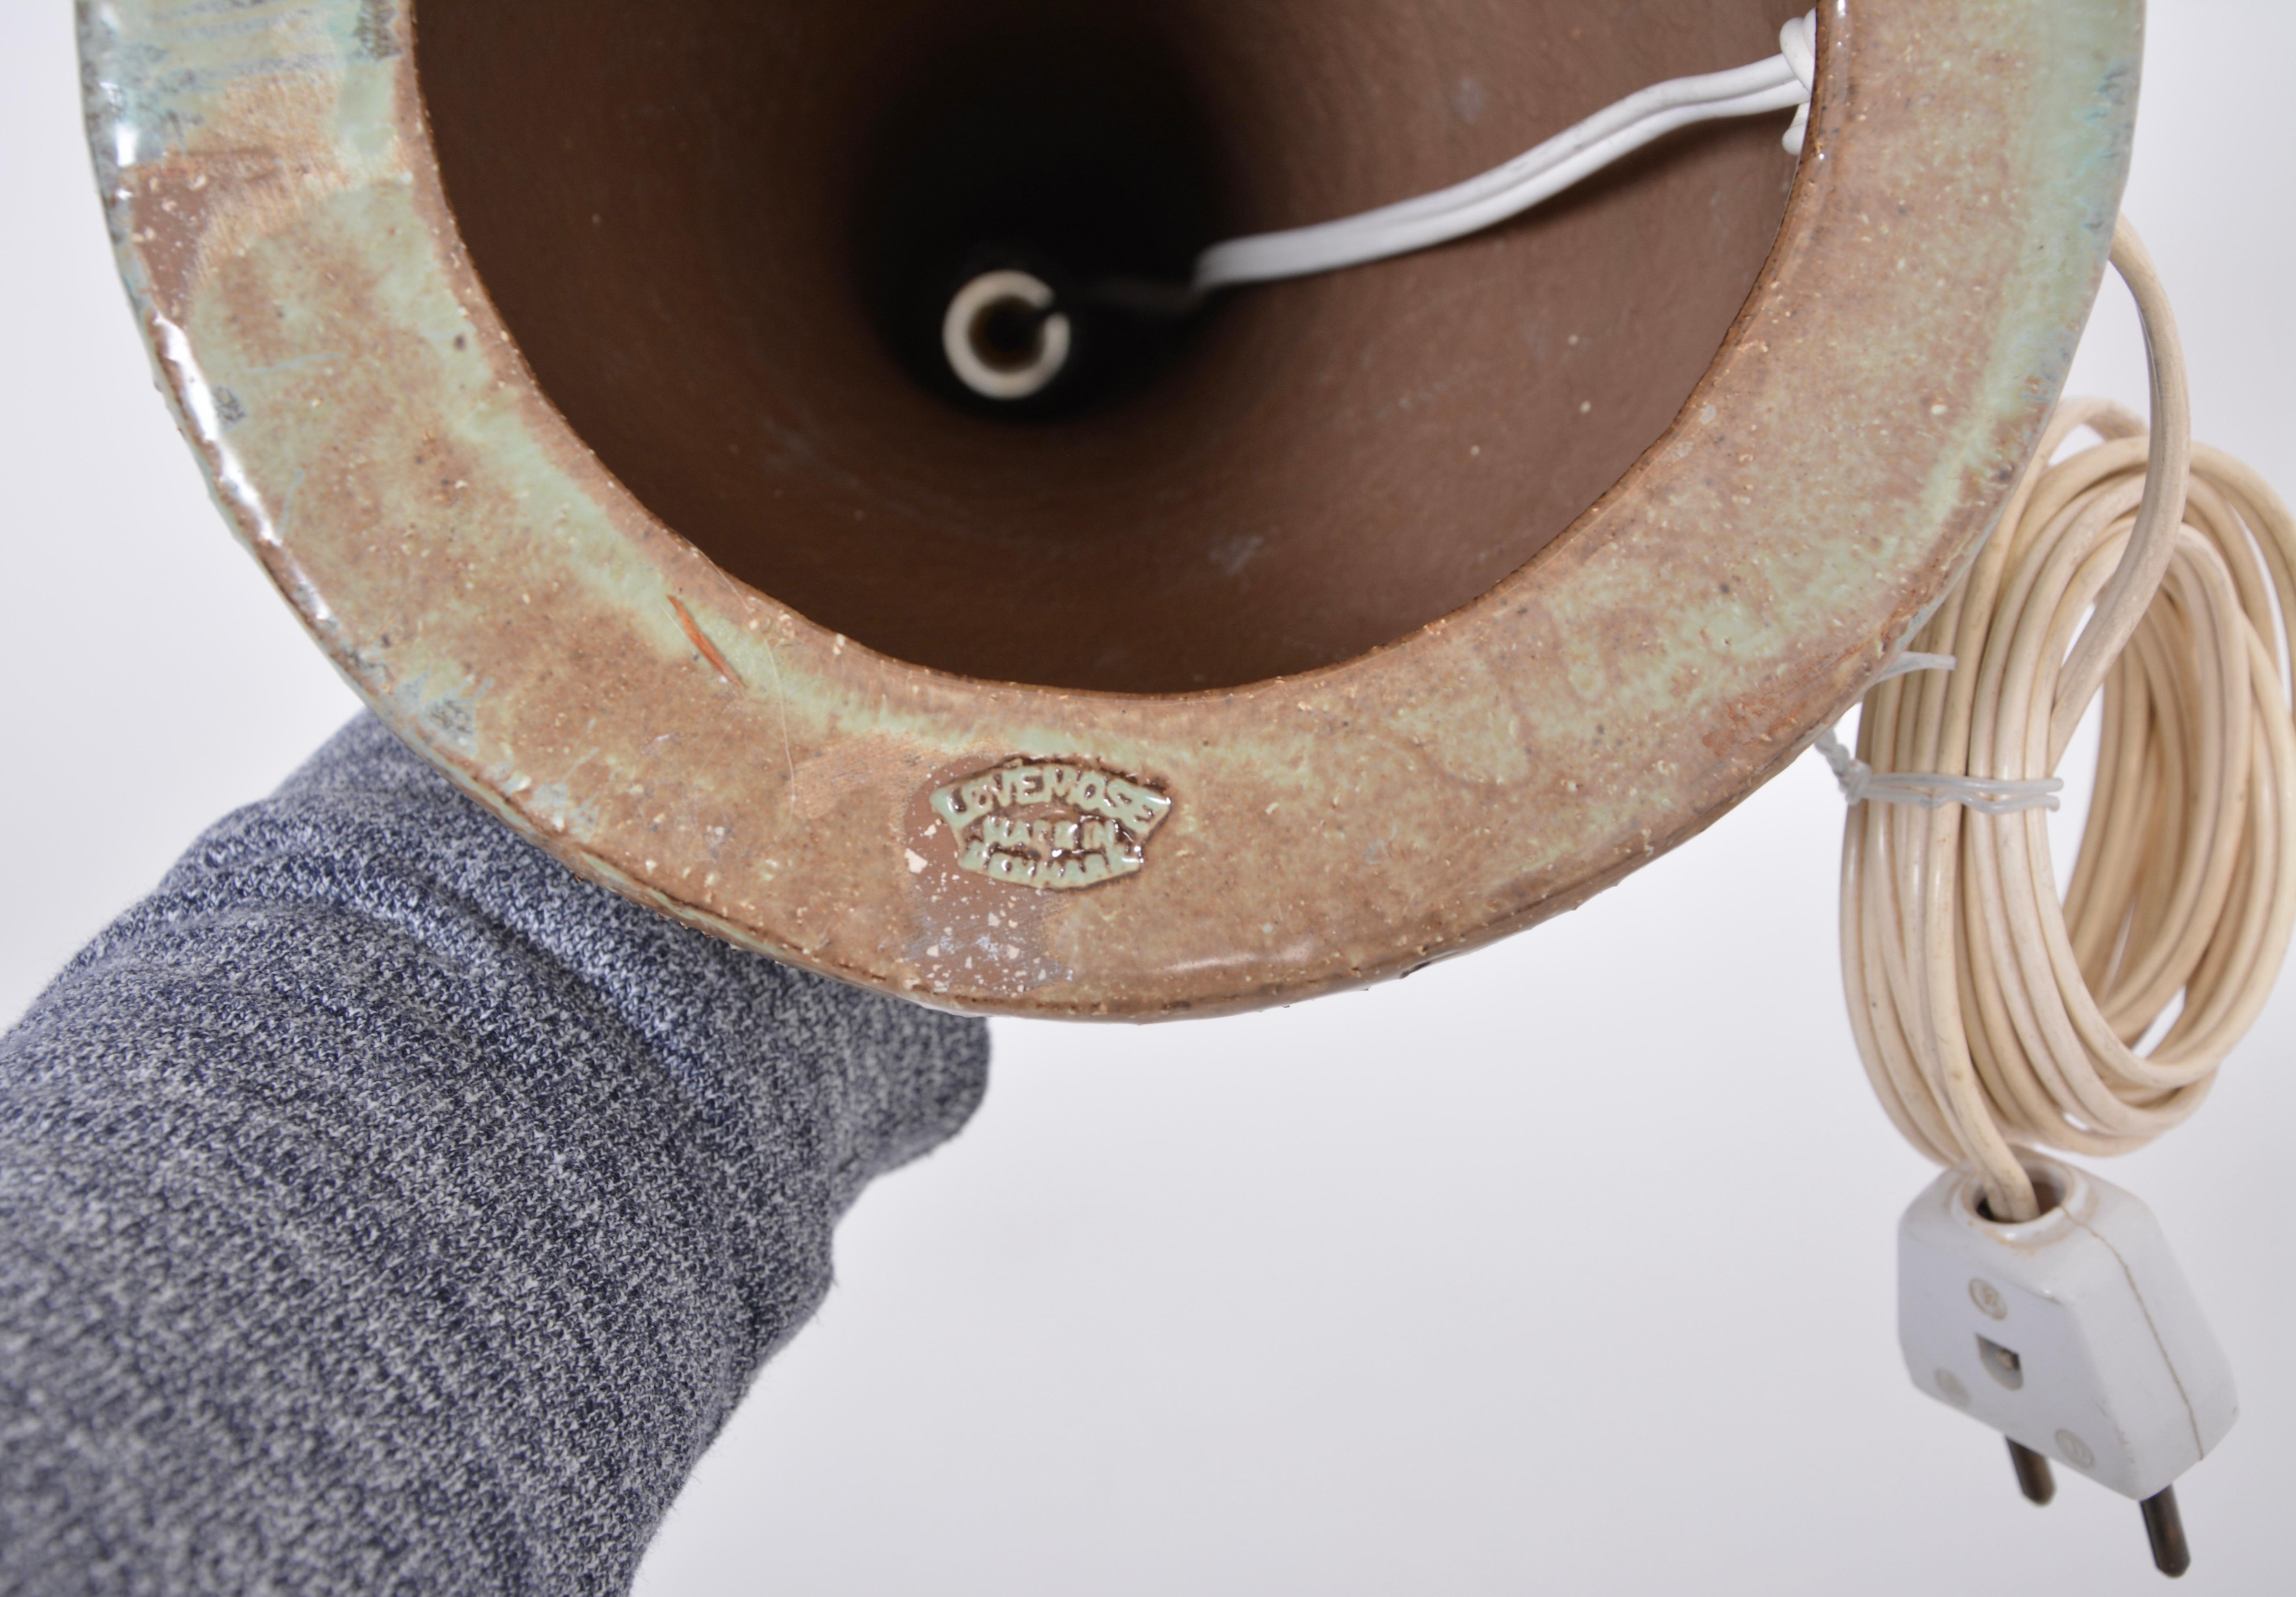 Handgefertigte dänische Mid-Century Modern Keramik Tischlampe von Løvemose Keramik
Diese hohe Tischleuchte wurde in den 1960er Jahren von Løvemose Keramik auf der kleinen dänischen Insel Langeland hergestellt. Der Sockel der Lampe besteht aus